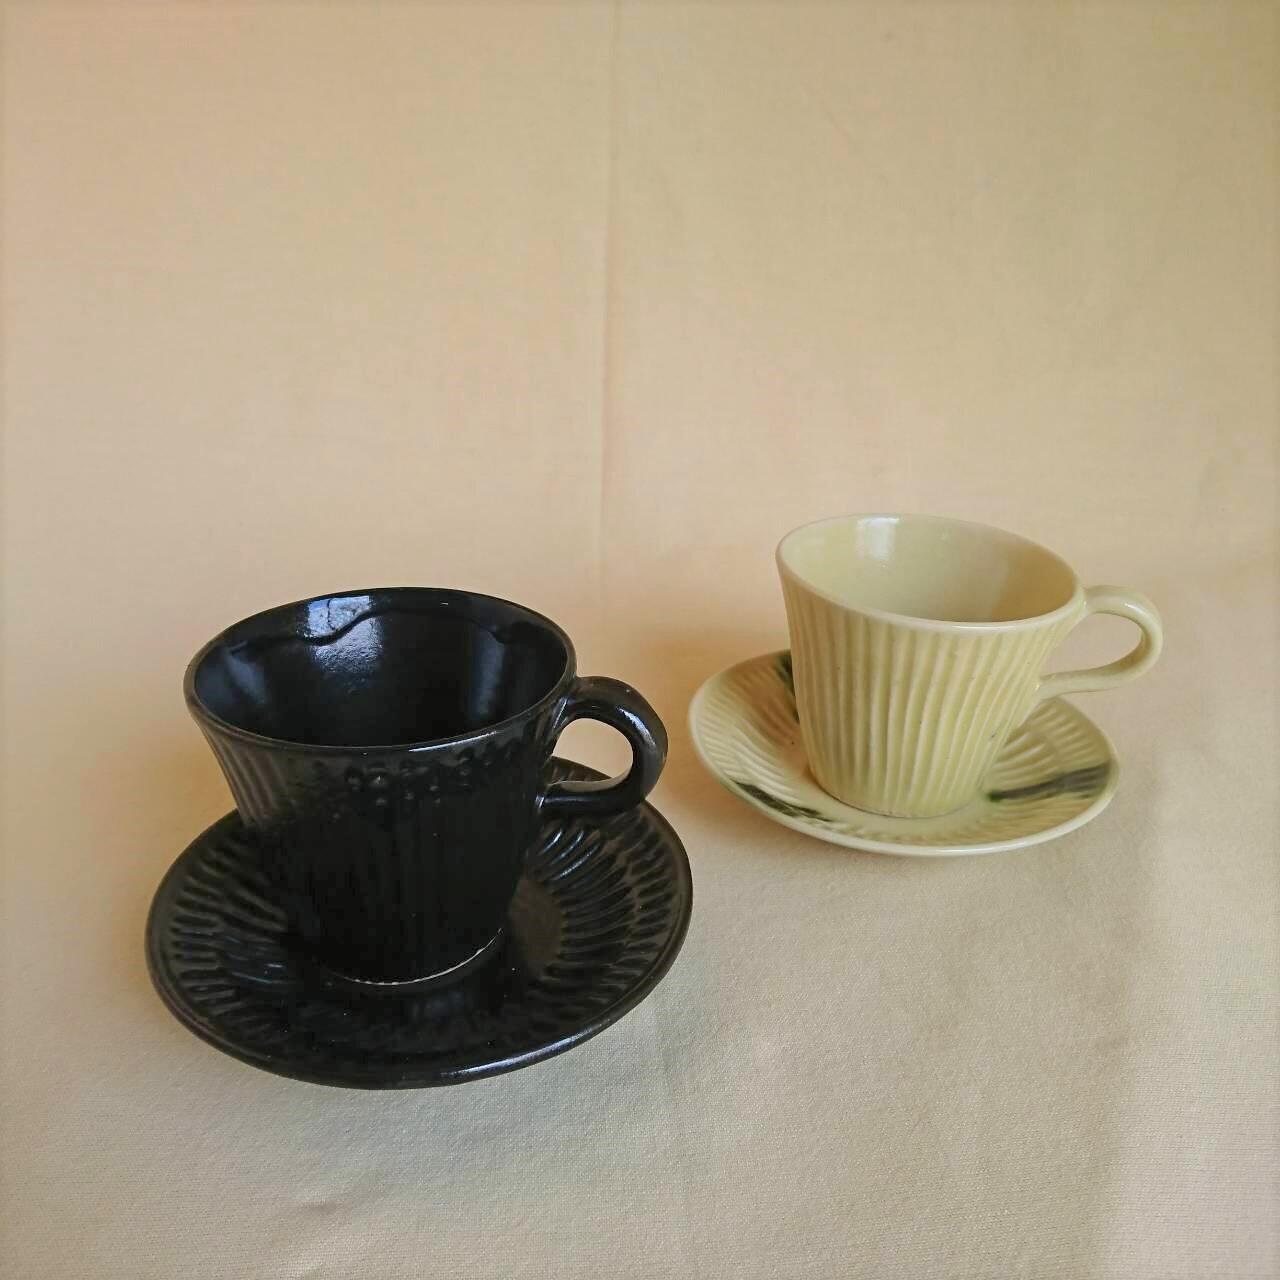 「黒曜石萌黄鎬彫コーヒー碗・黒曜石鎬彫コーヒー碗」 <br>五臓六腑が喜ぶ「黒曜石萌黄土瓶」で沸かしたお湯を使うと、より美味しいコーヒーを淹れることができます。